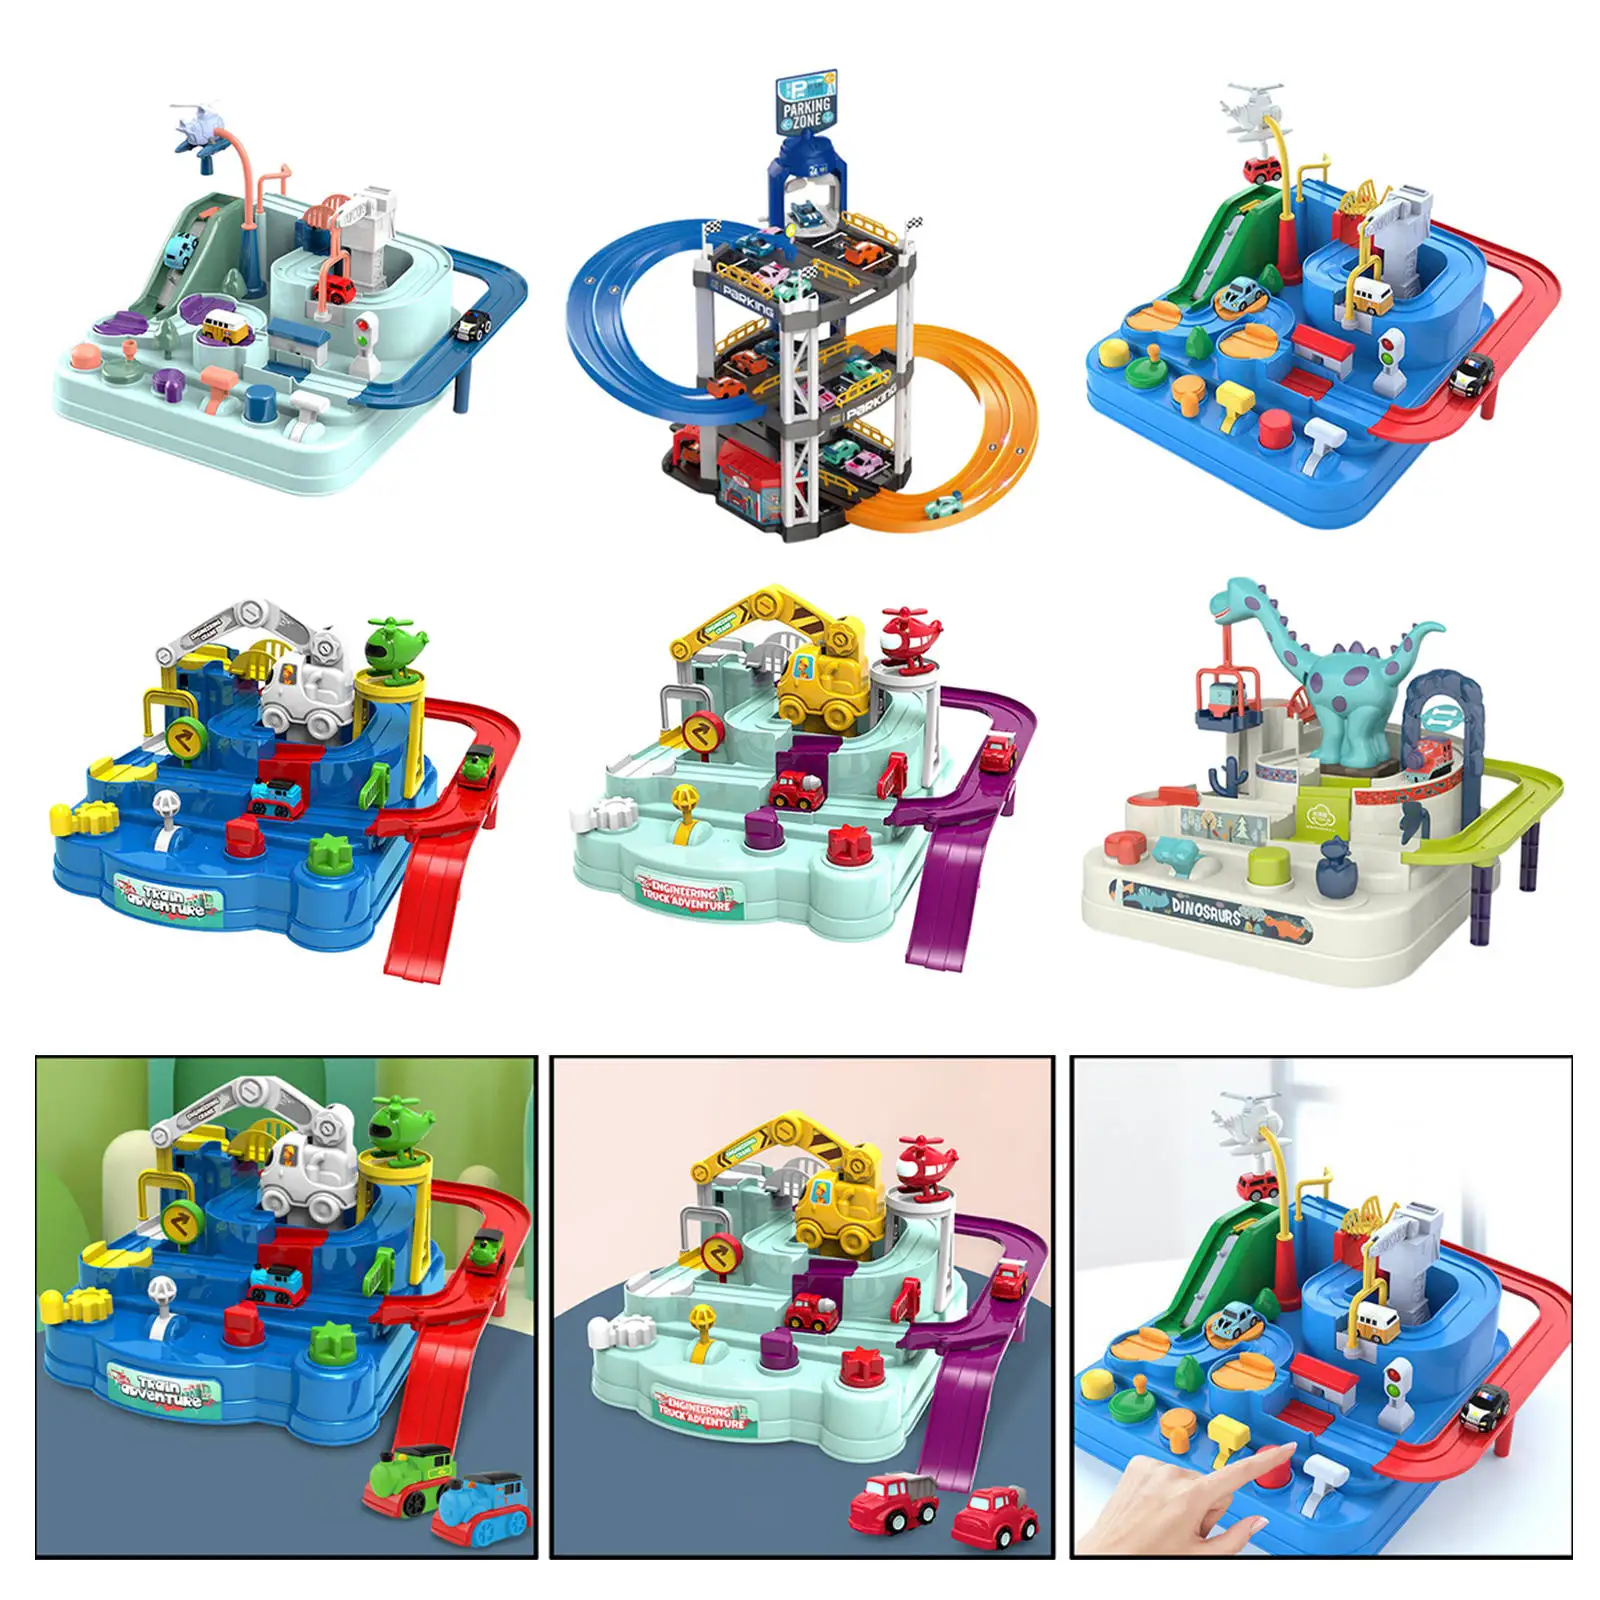 

Гоночный трек, развивающие игрушки, игрушечный набор, игрушечные машинки, поезд, автомобиль, приключения для детей